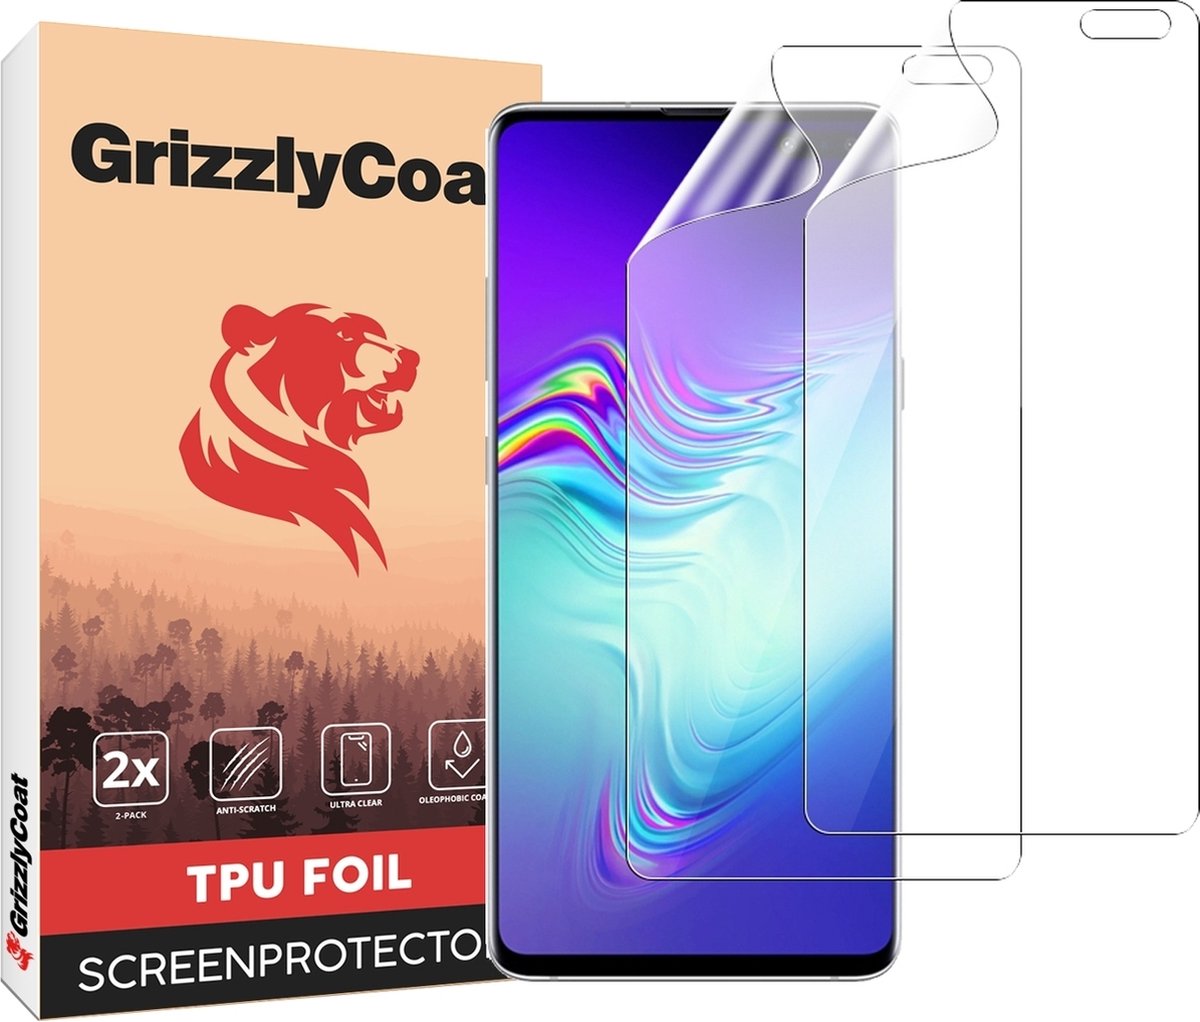 GrizzlyCoat - Screenprotector geschikt voor Samsung Galaxy S10 5G Hydrogel TPU | GrizzlyCoat Screenprotector - Case Friendly (2-Pack)